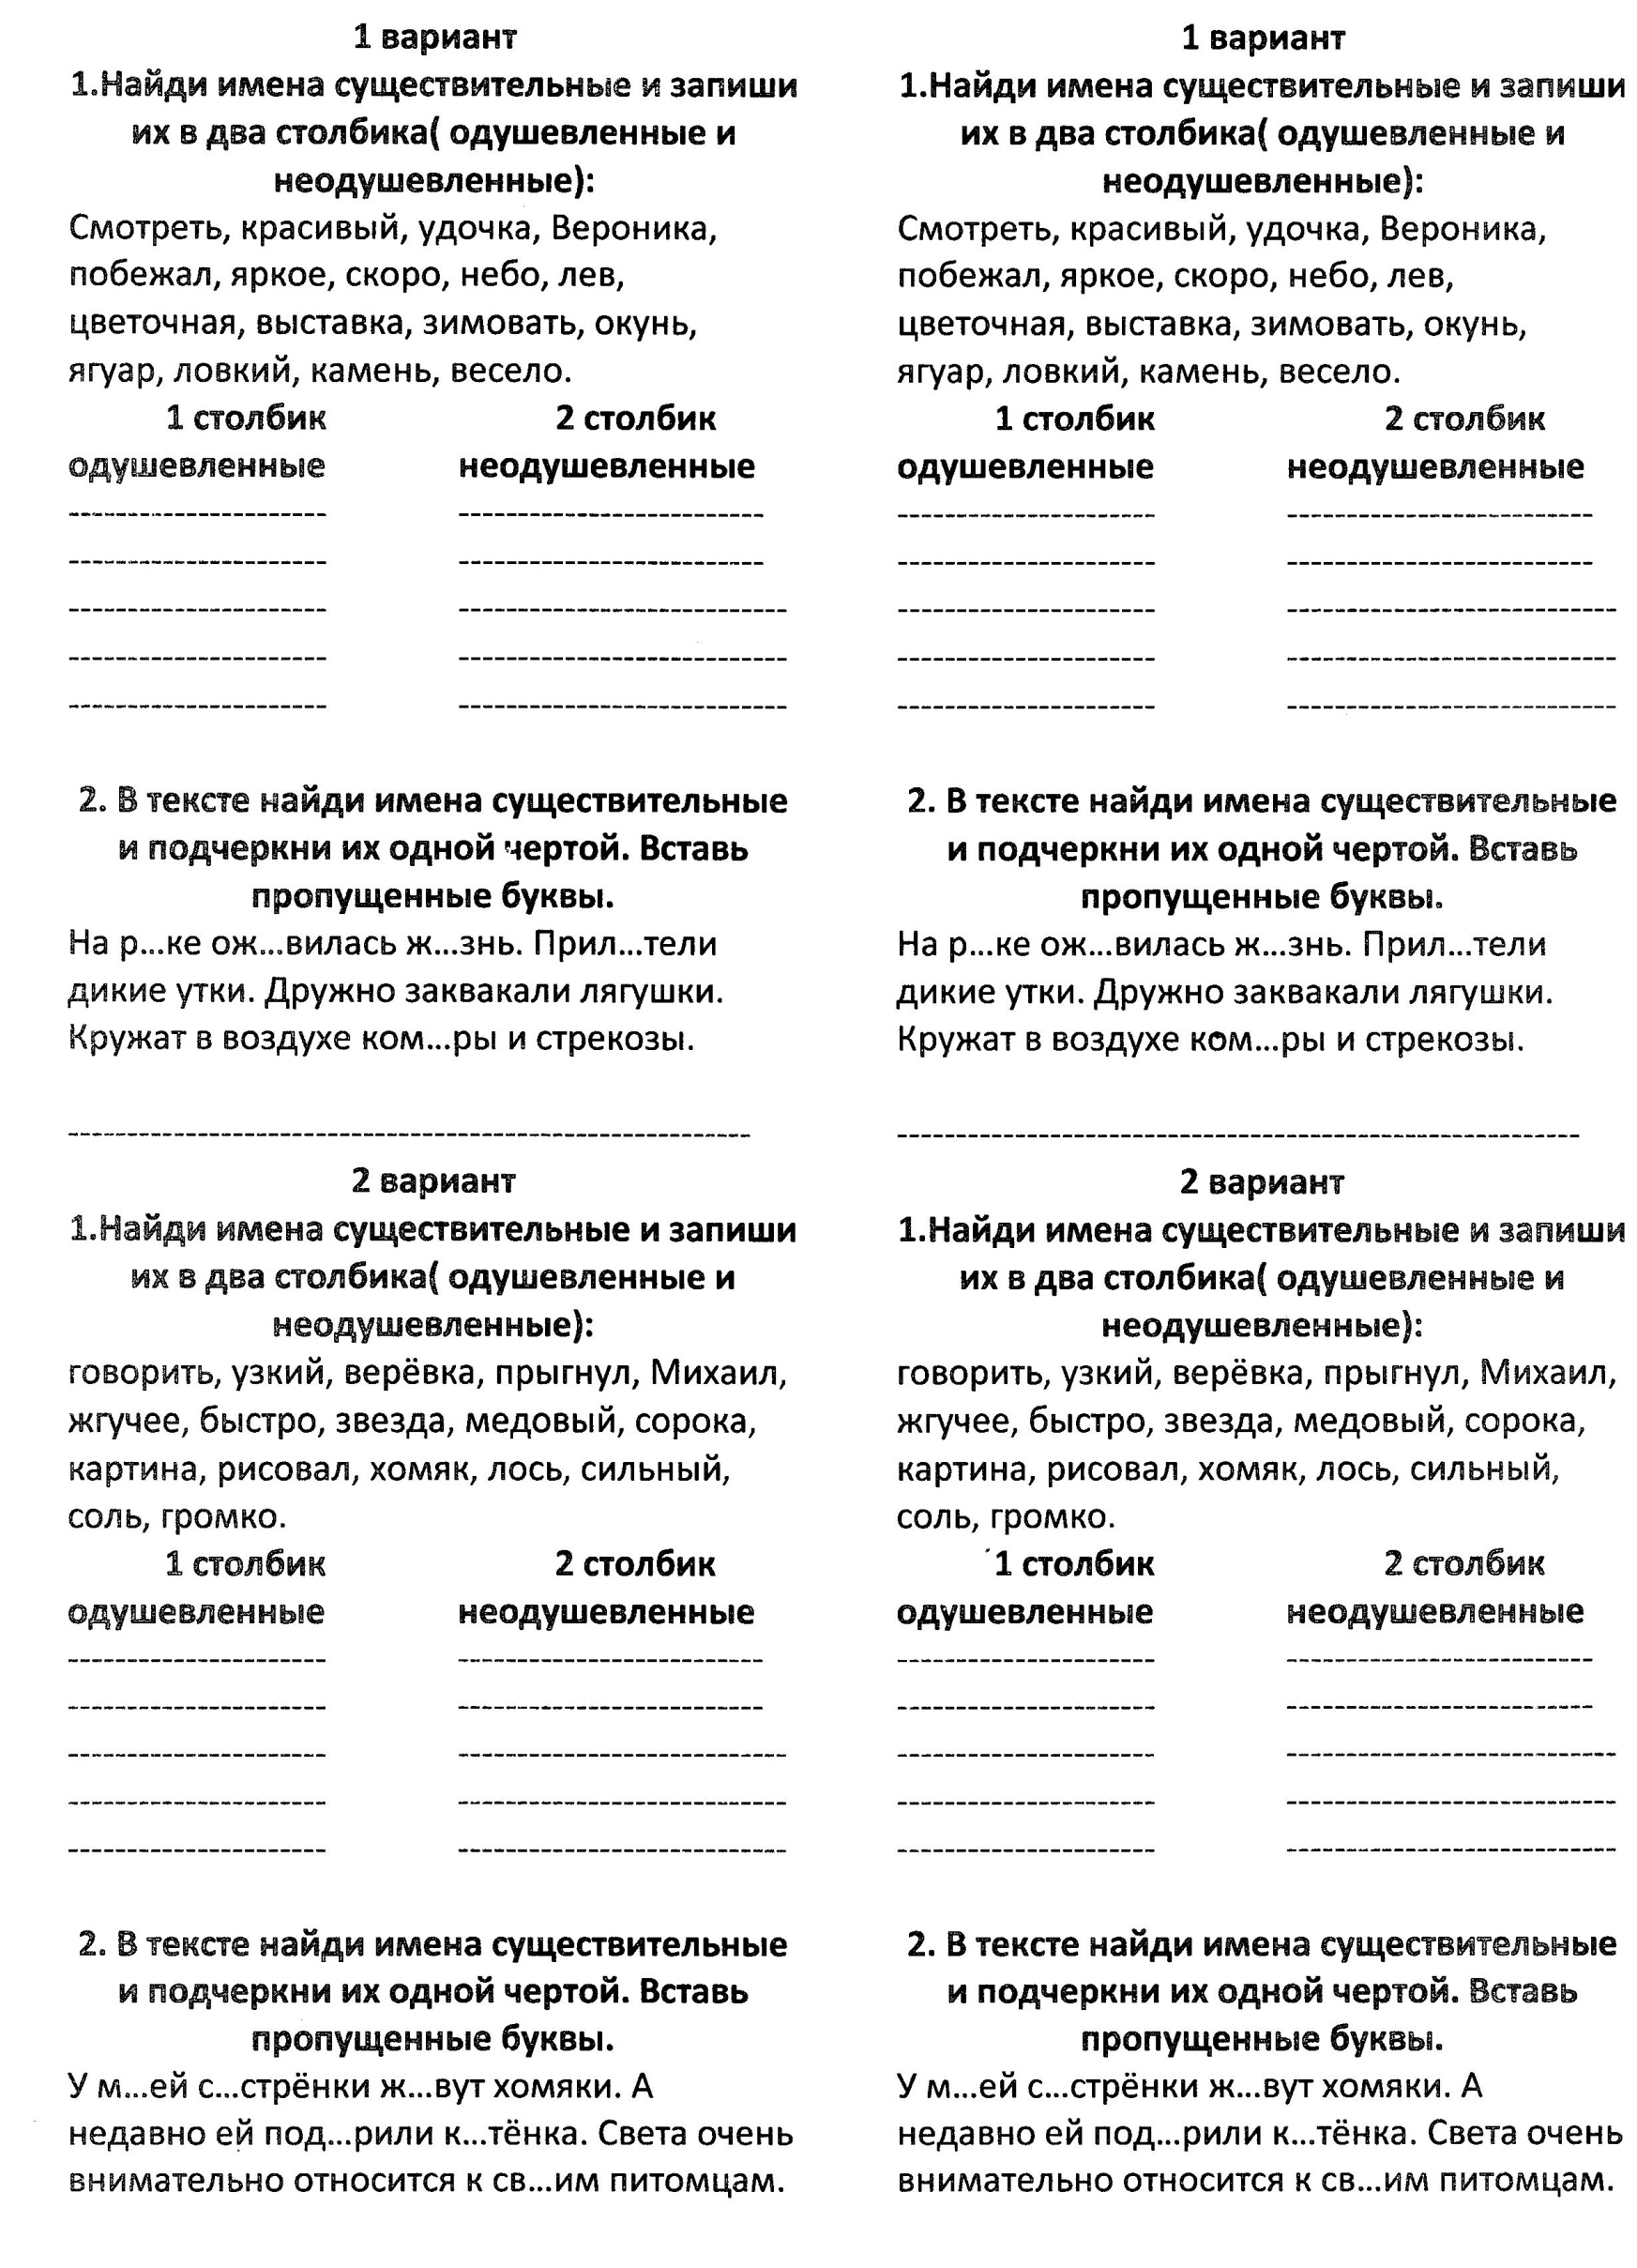 Проверочные работы по русскому языку